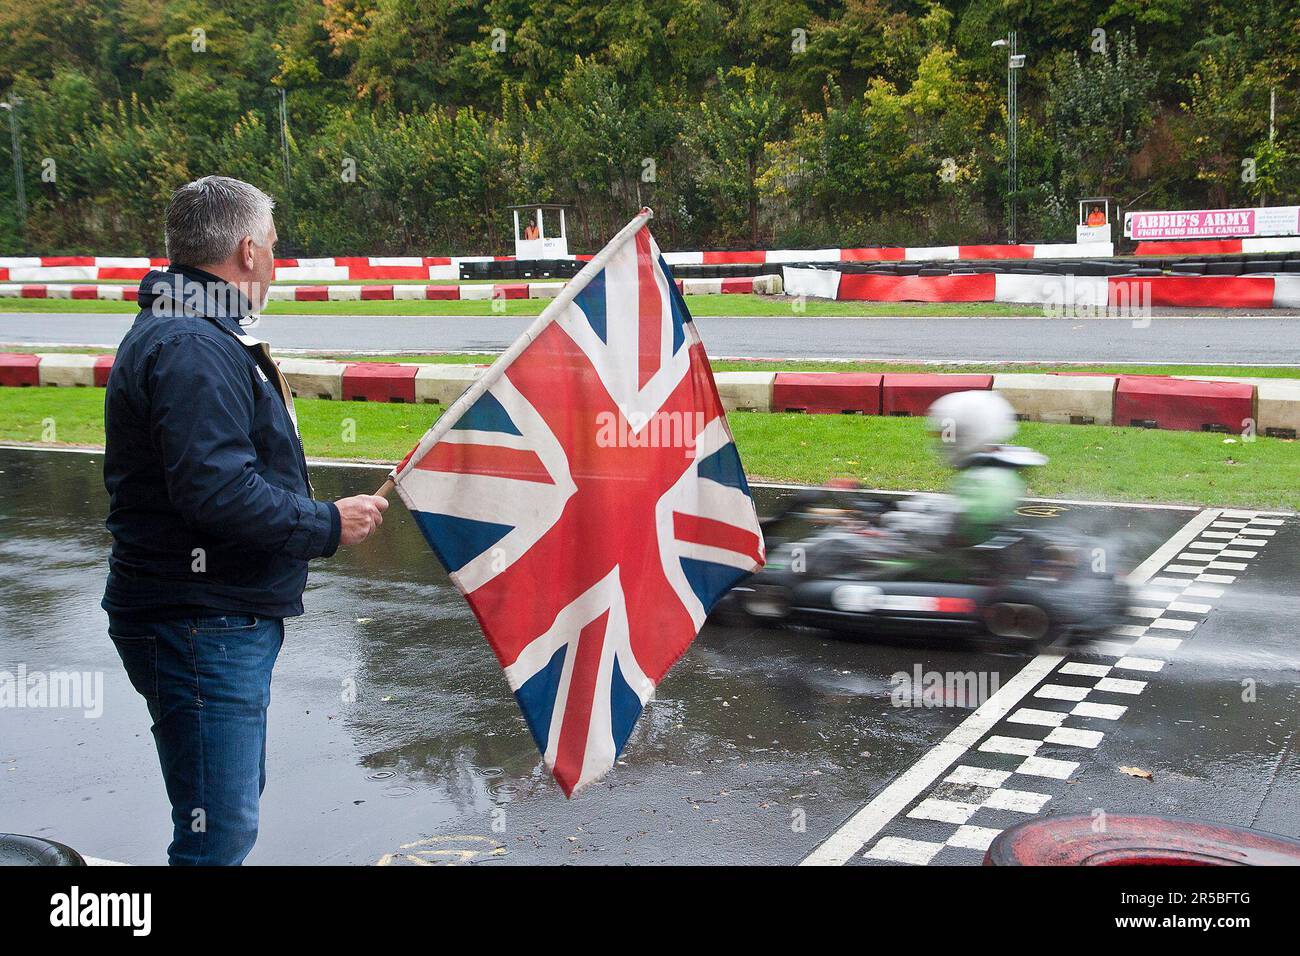 Paul Hollywood, der Star von BBC Television, „Great British Bake Off“, eröffnet die diesjährige Henry Surtees Challenge im Buckmore Park, Kent, Großbritannien. 08.10.2014 Stockfoto